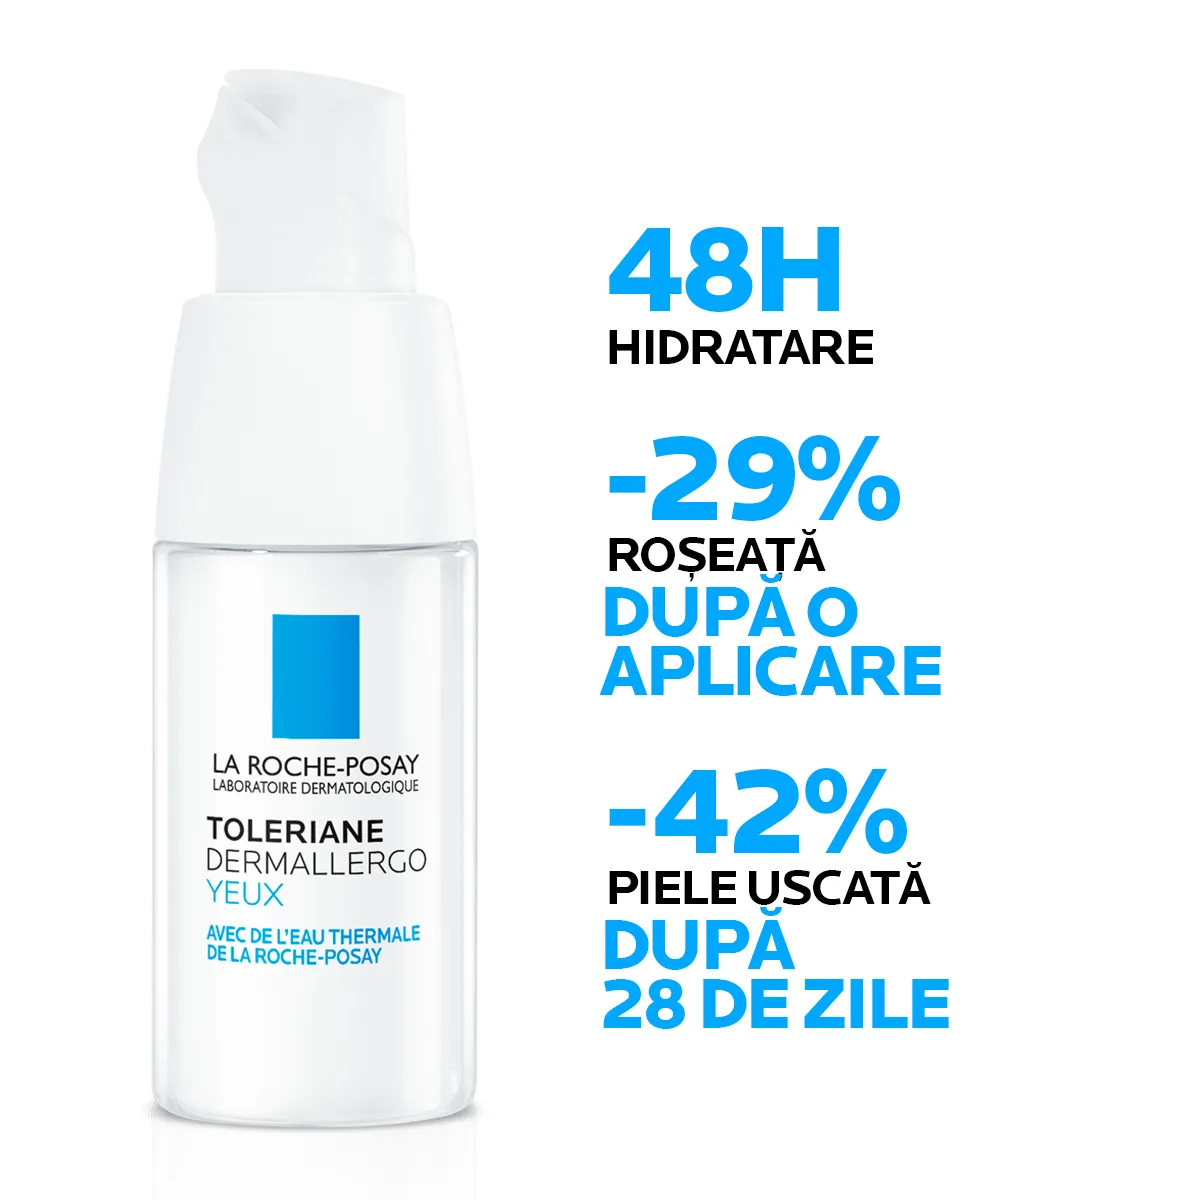 Crema hidratanta si reparatoare pentru conturul ochilor Toleriane Dermallergo, 20ml, La Roche-Posay 